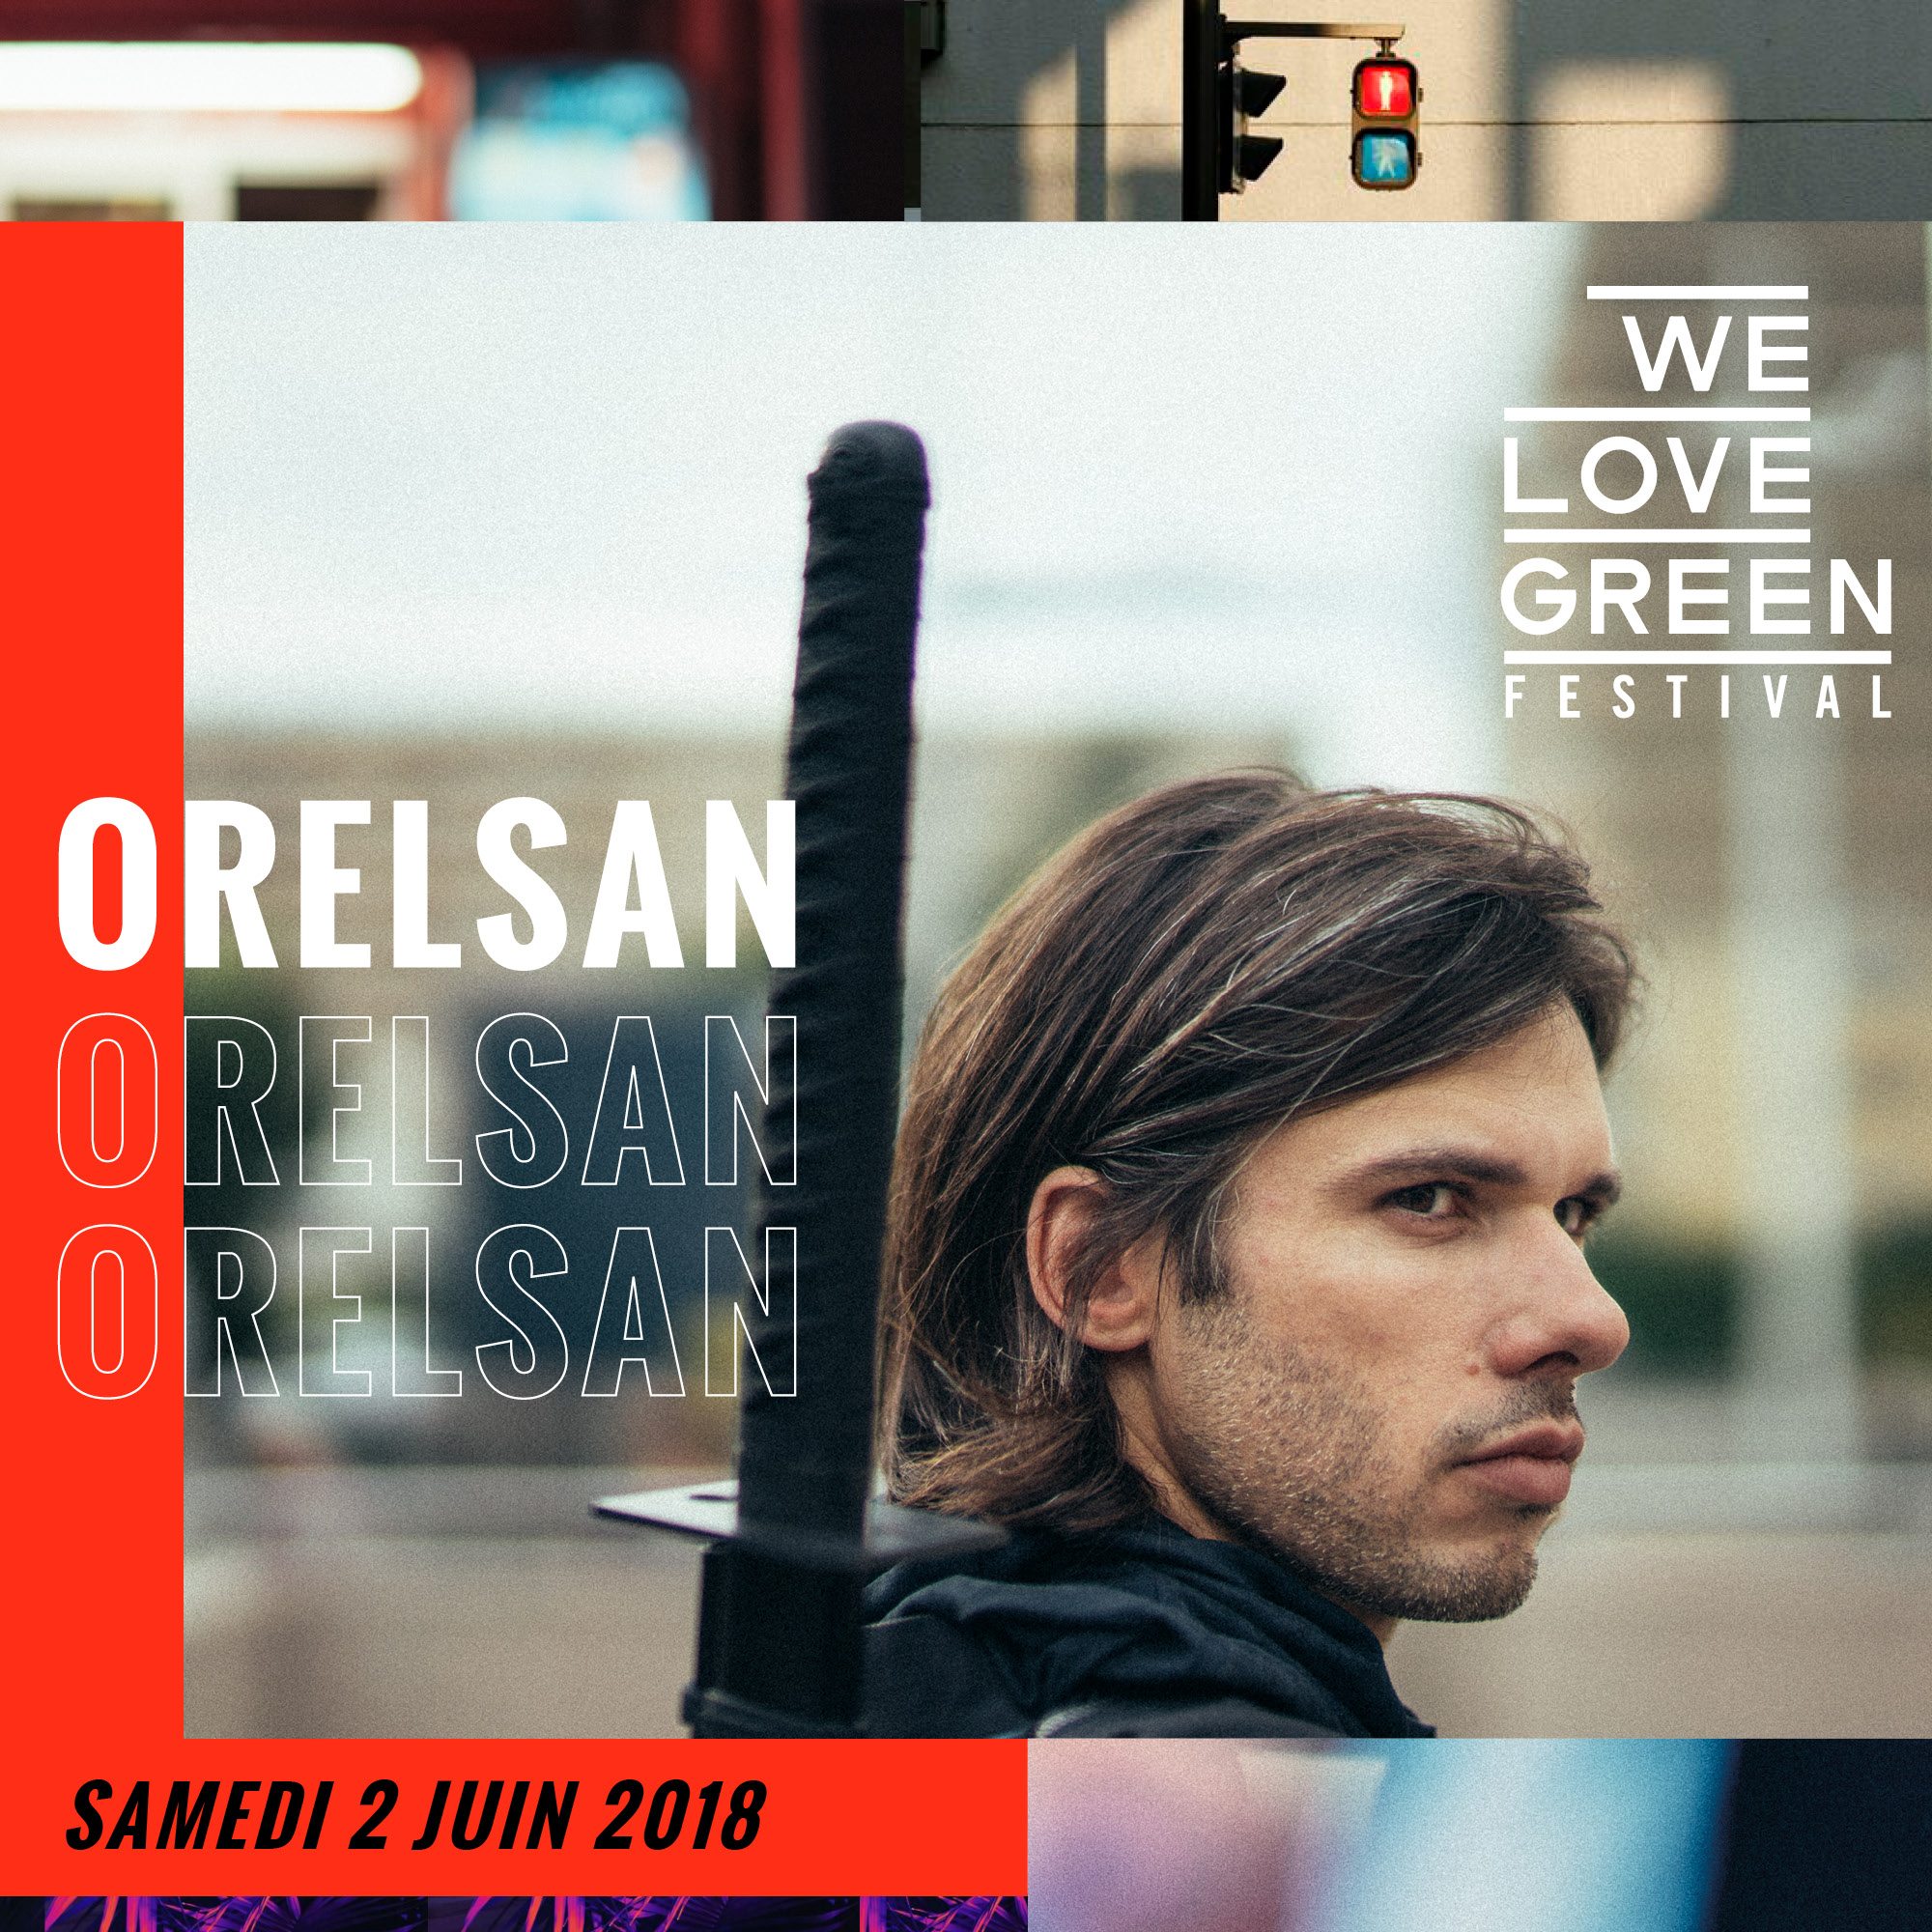 Ce week-end, la vague We Love Green déferle sur Paris